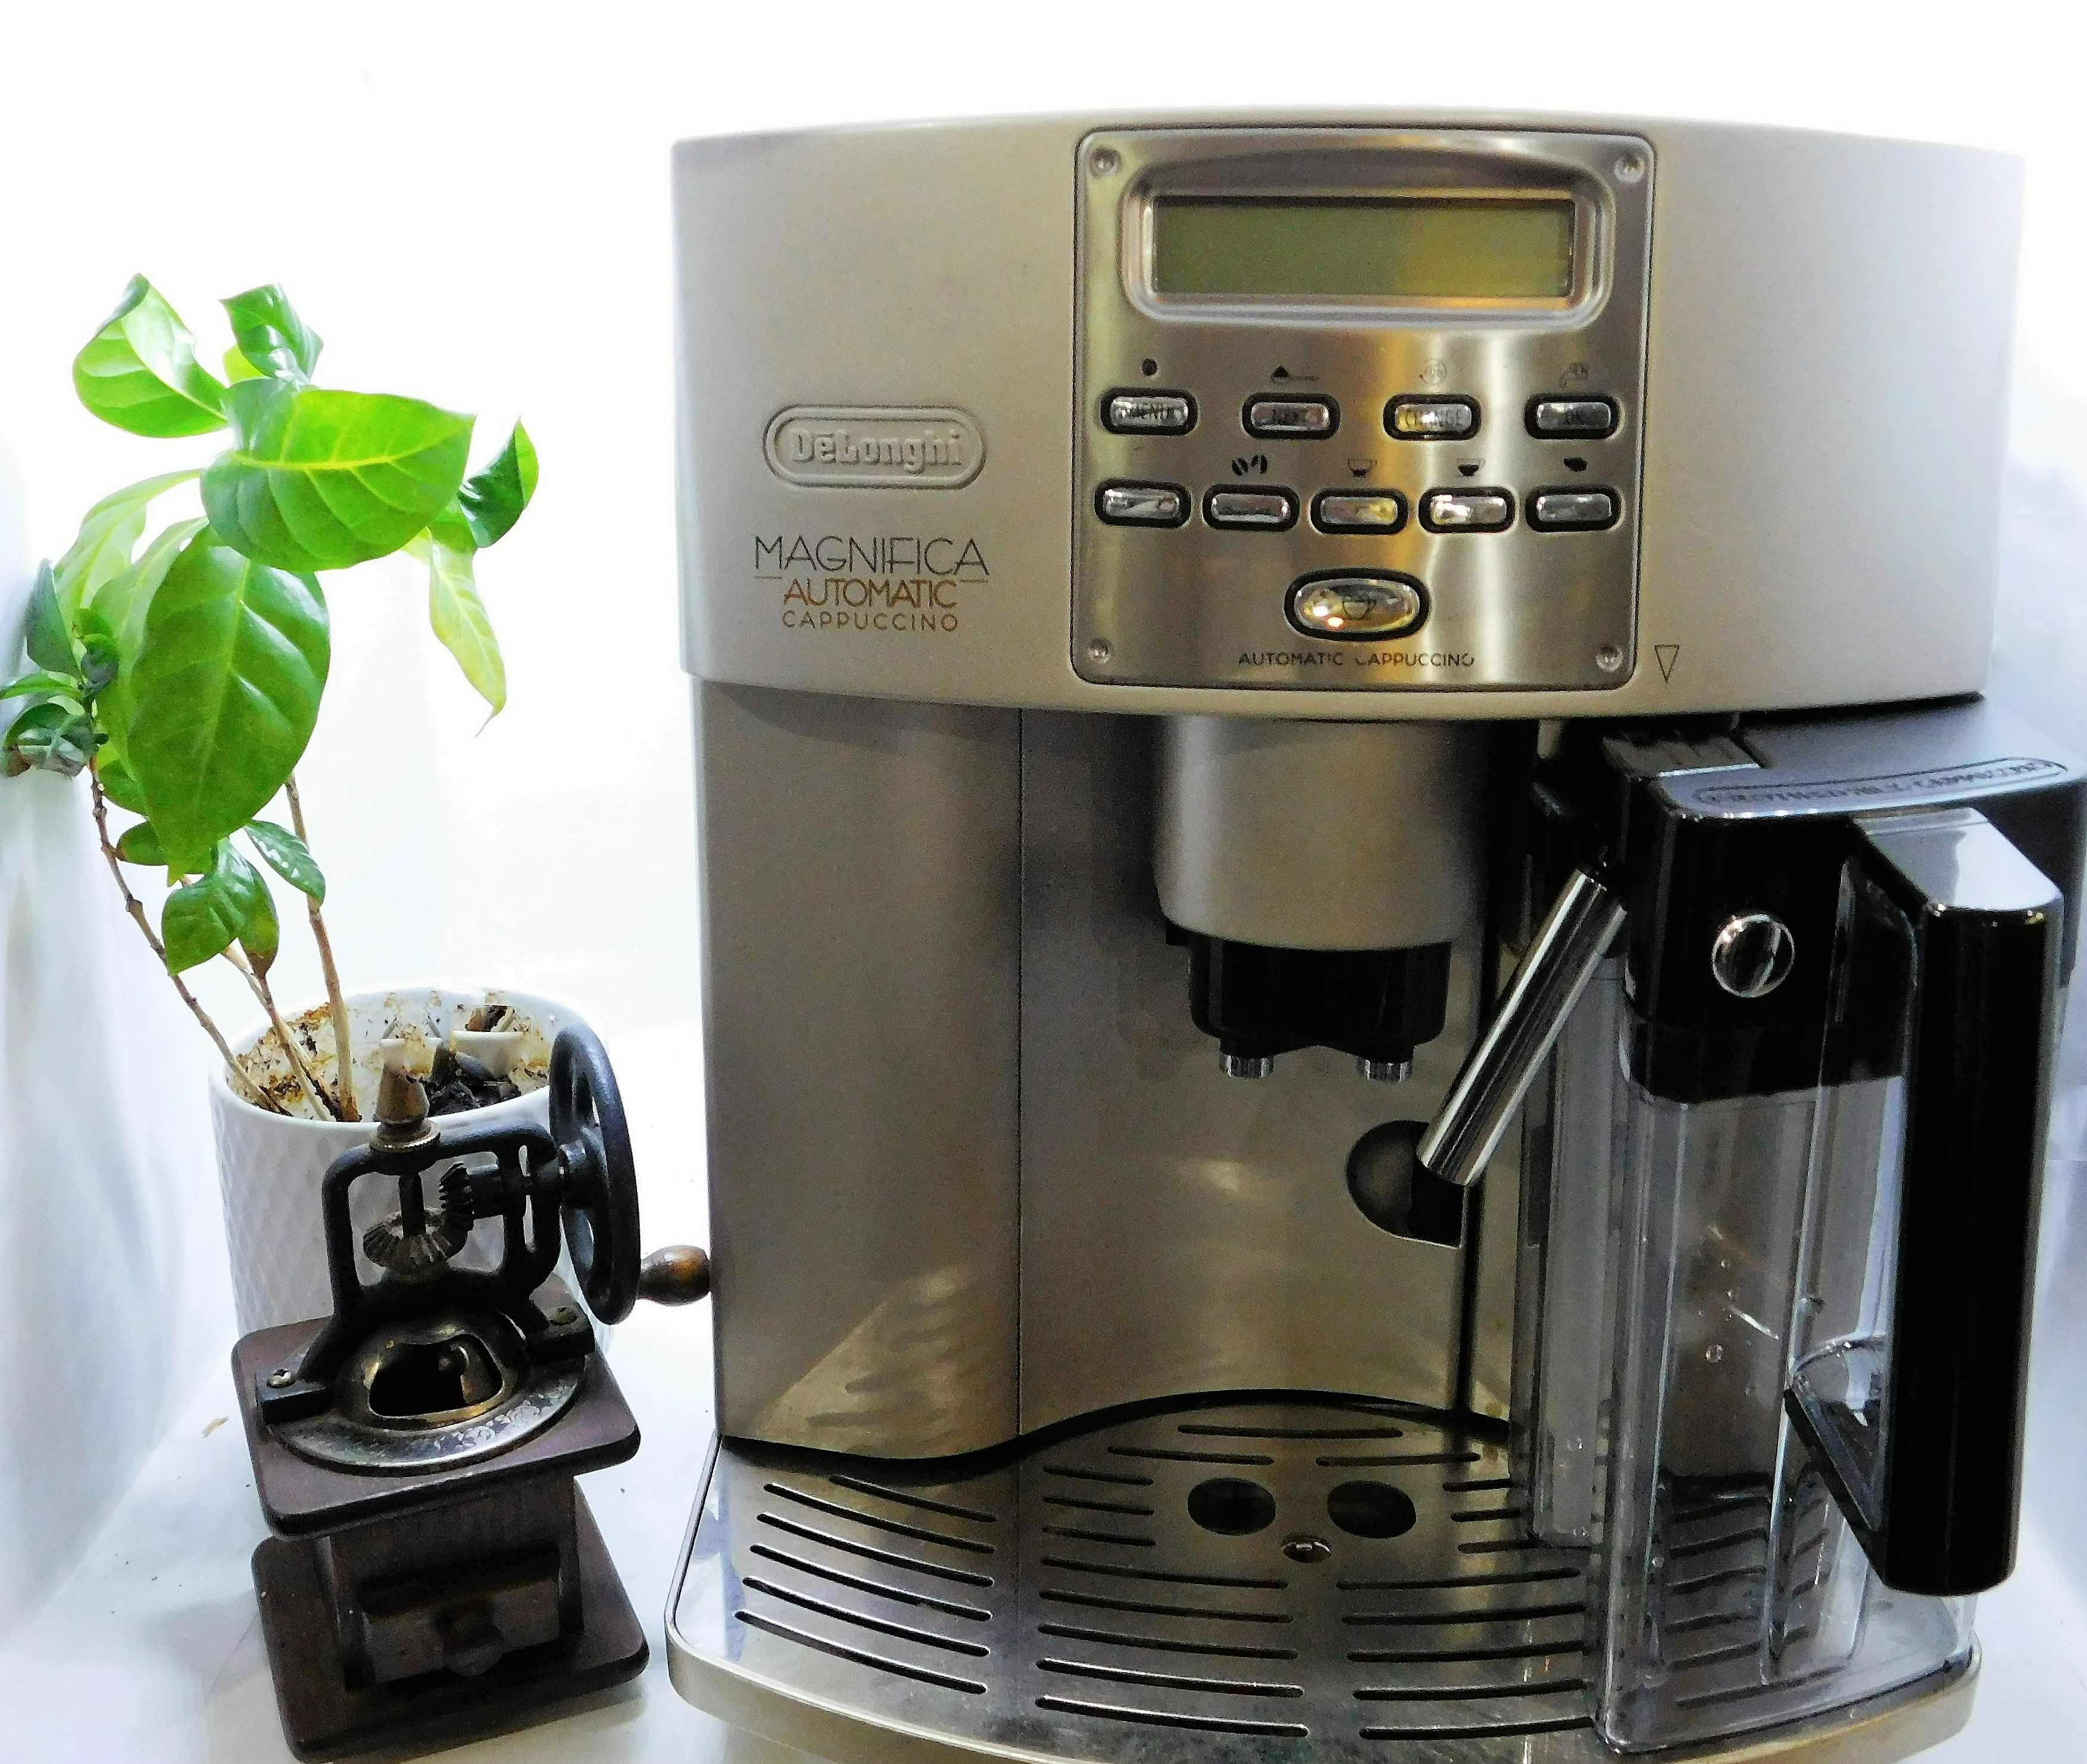 Espressor Delonghi Magnifica Automatic Cappuccino / garantie 12 luni